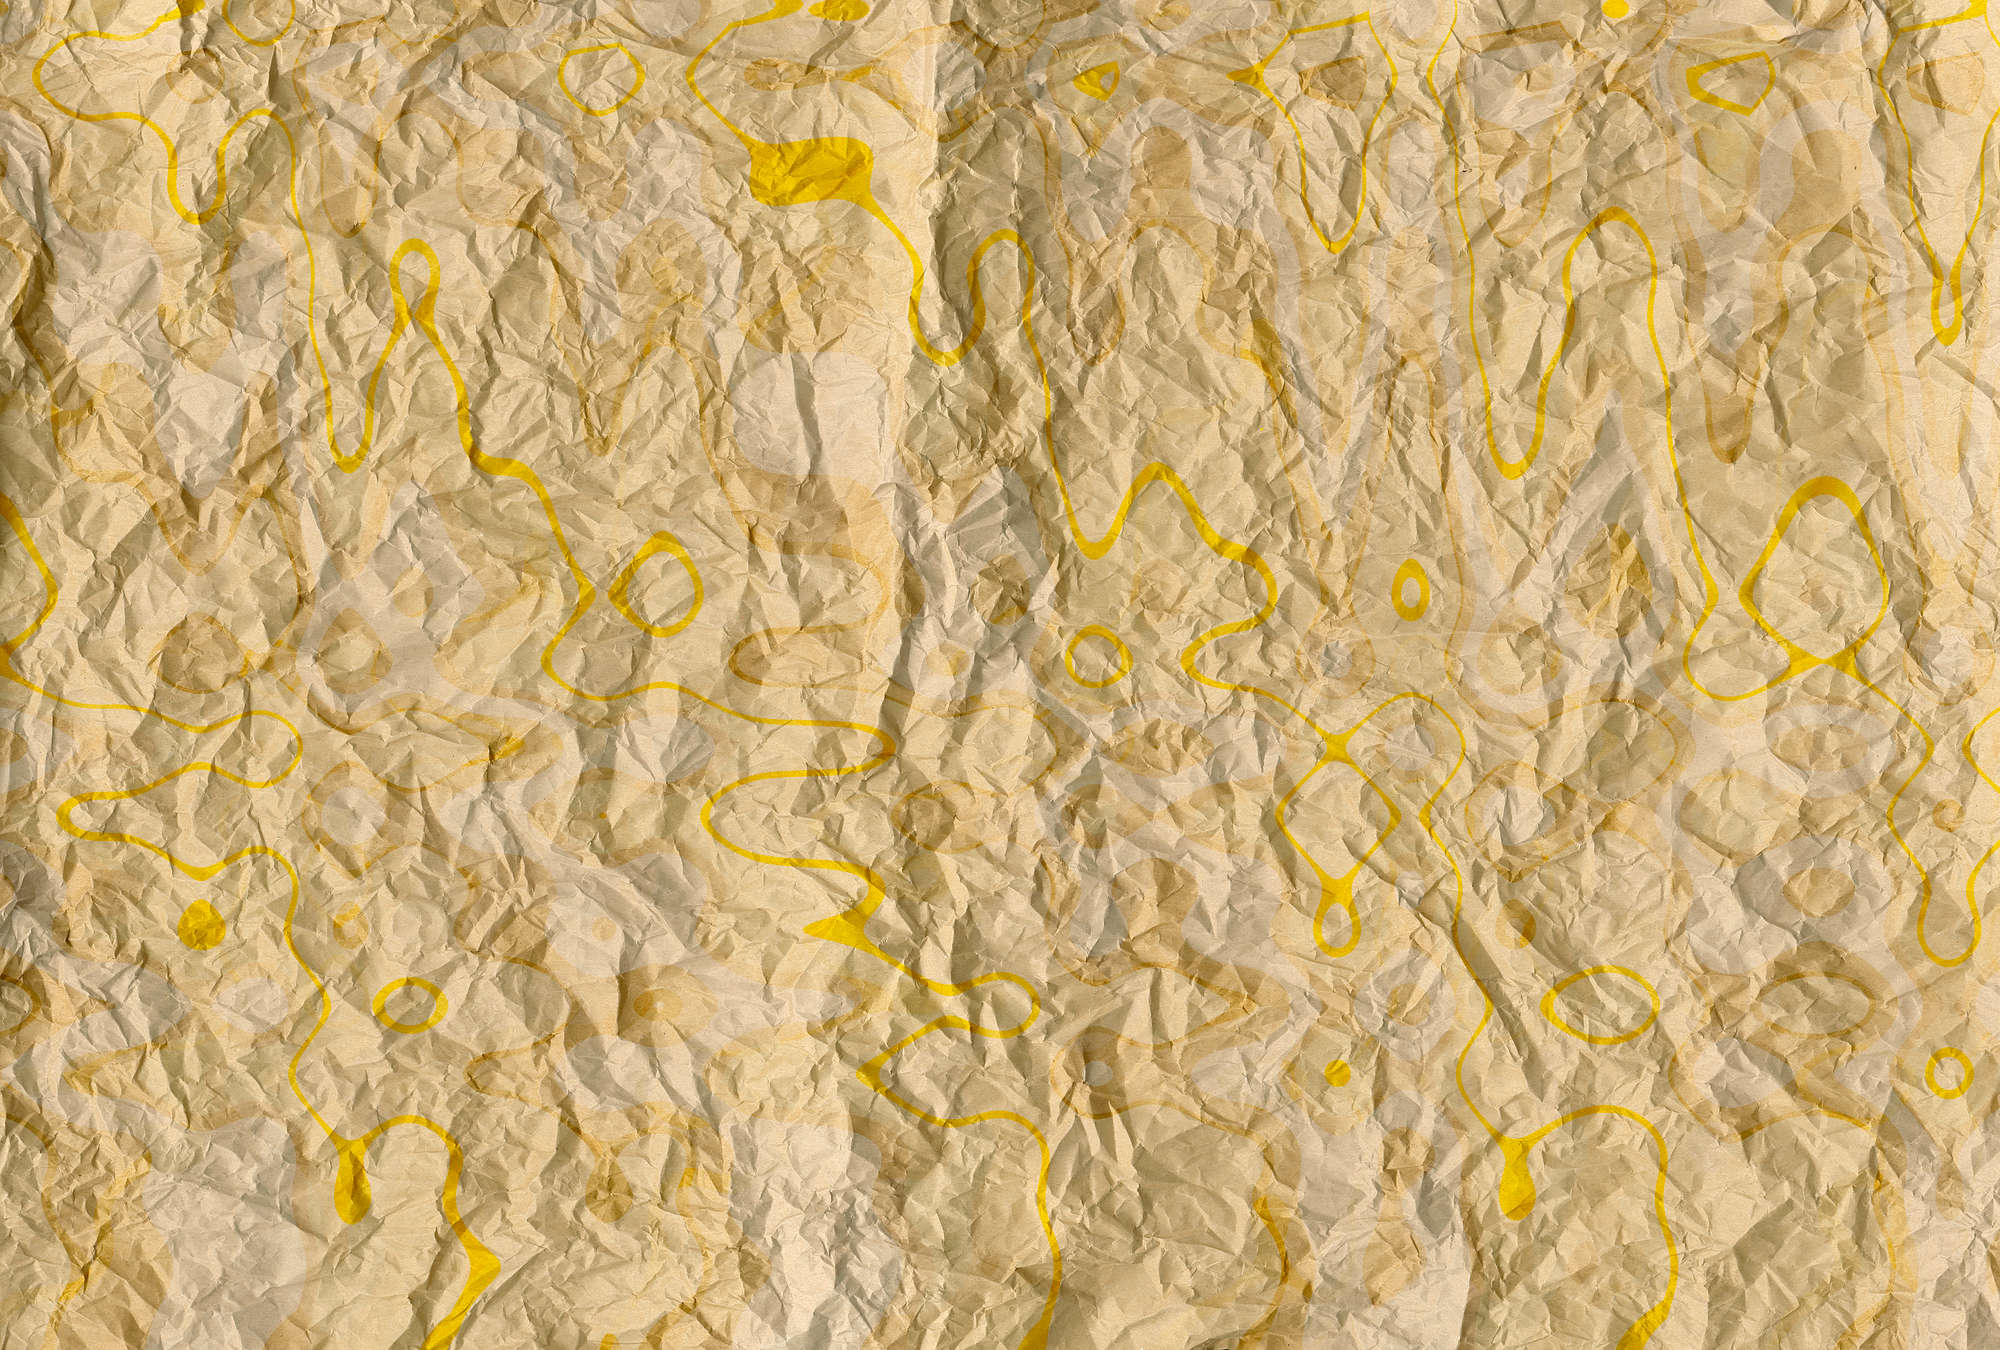             Retro Patroon & Papier Look Behang voor Jeugdkamer - Geel, Oranje
        